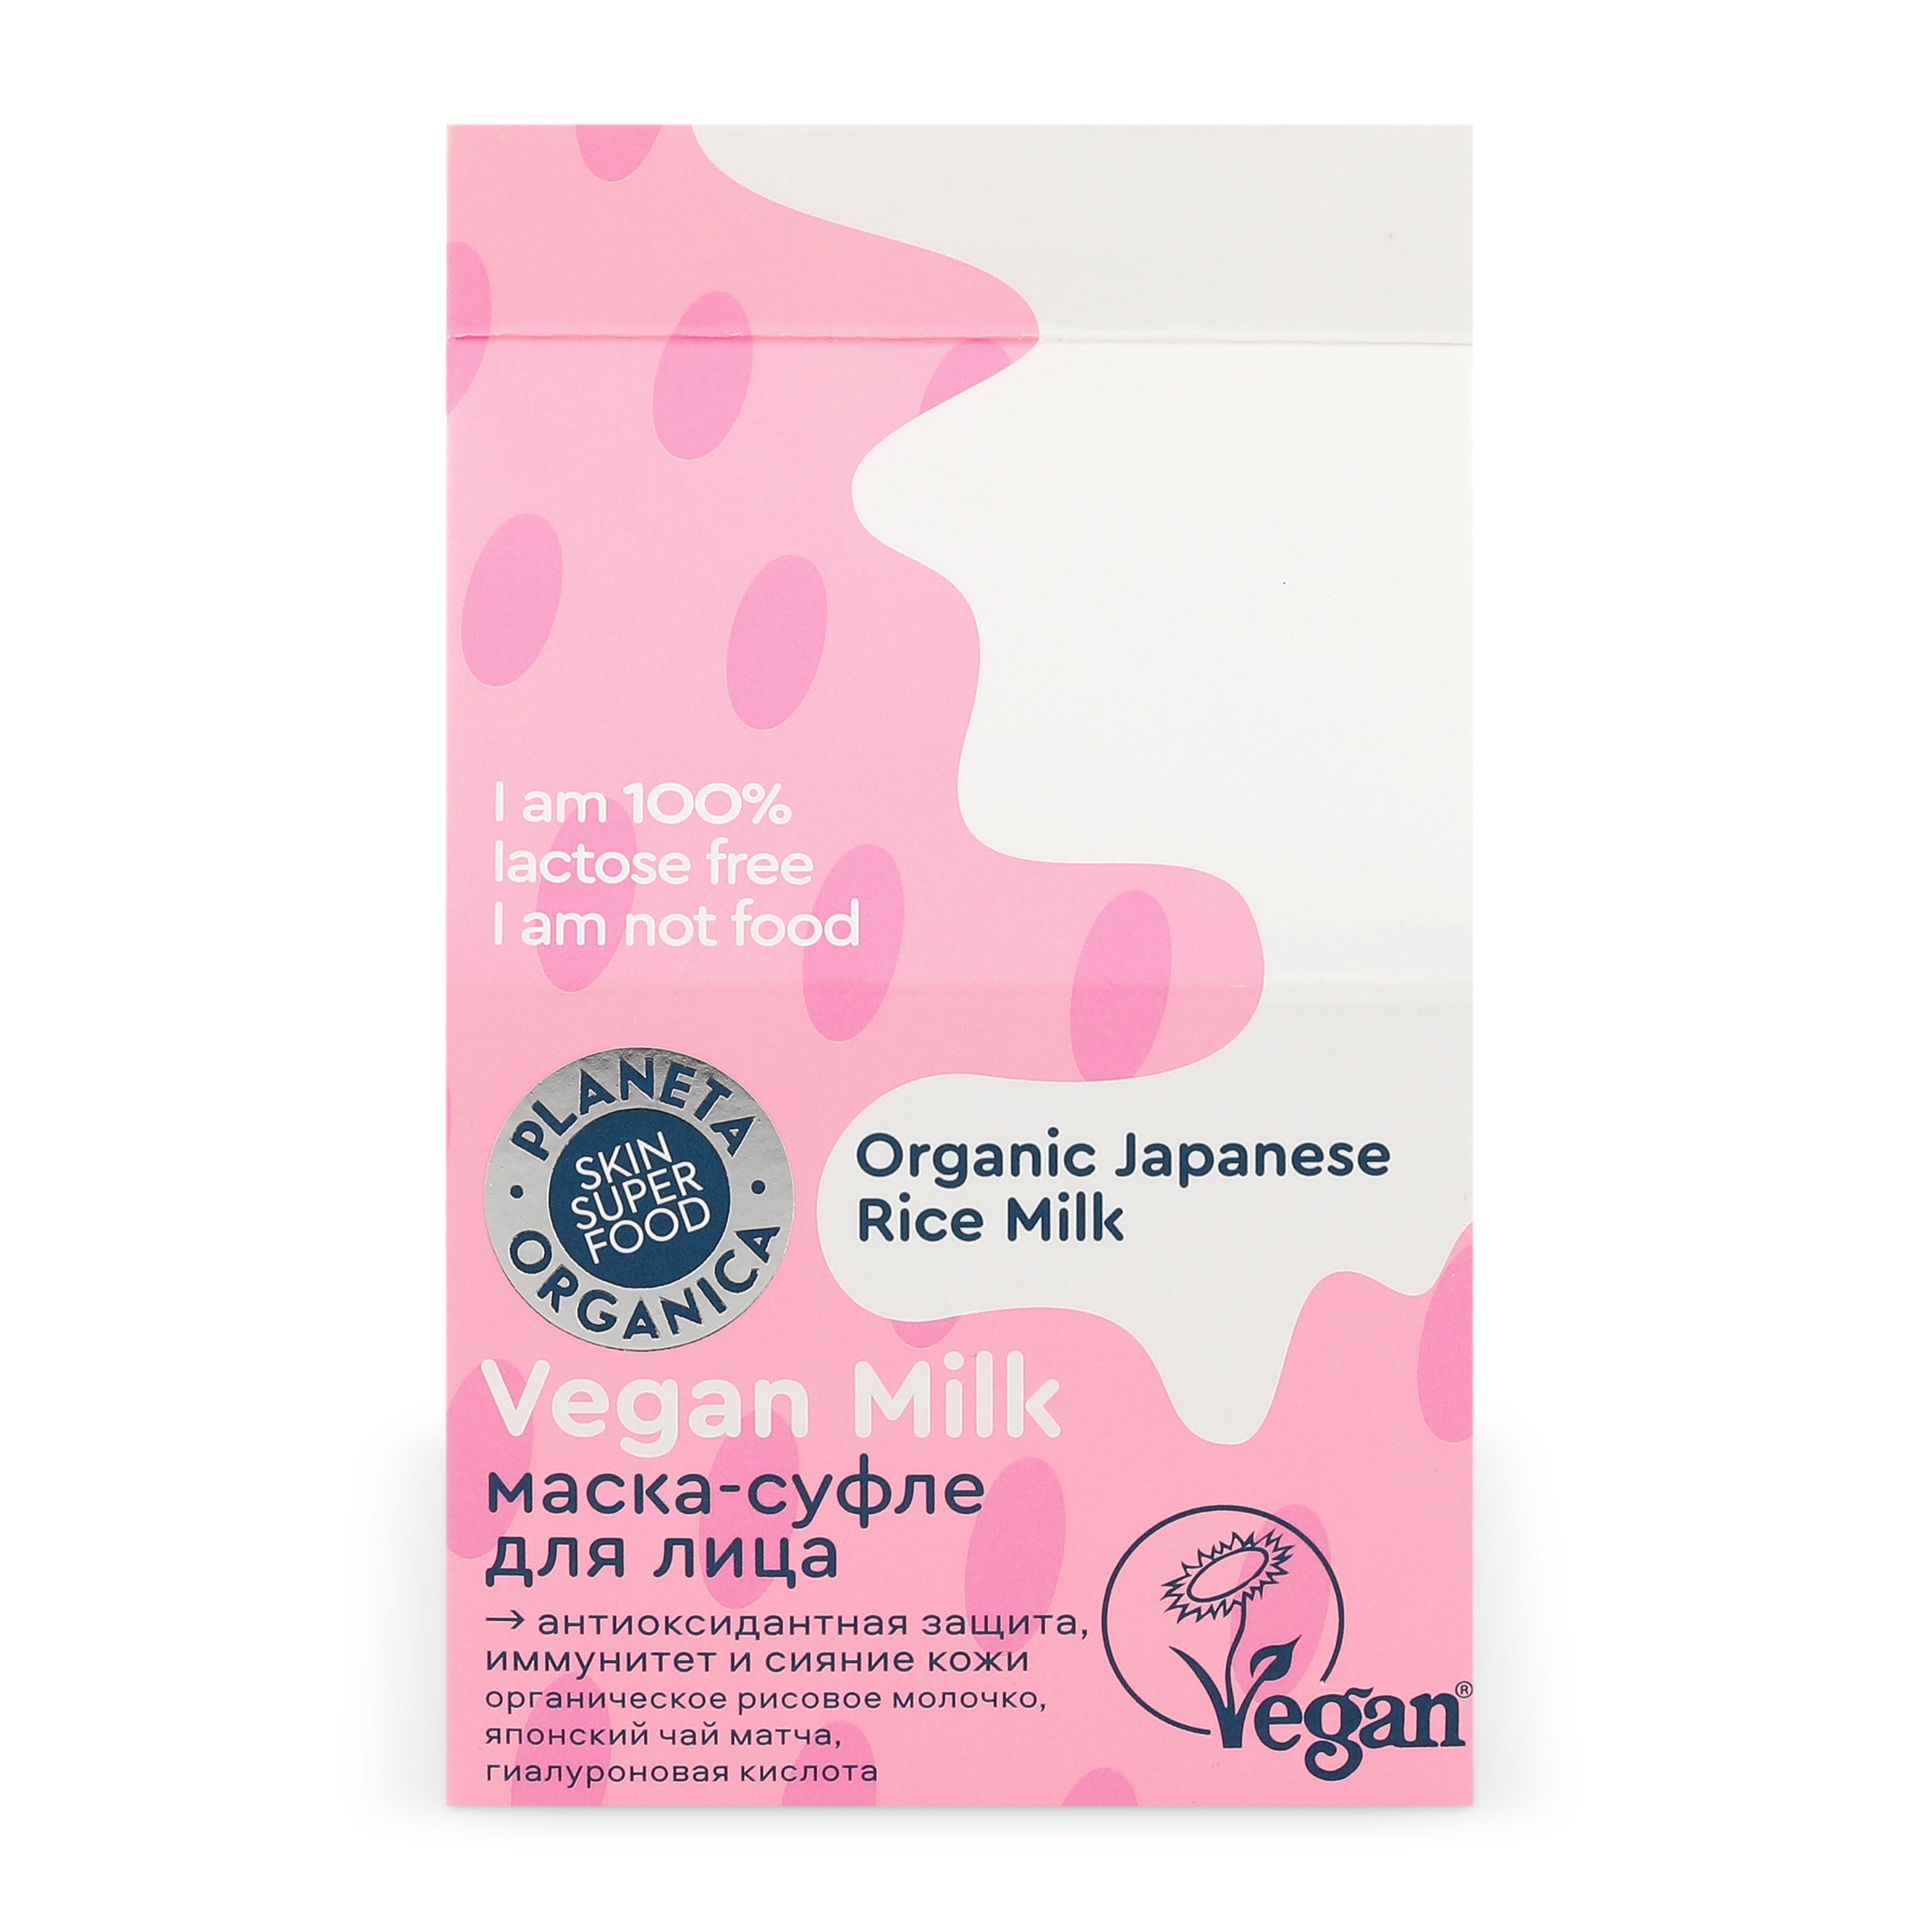 Маска-суфле для лица Planeta Organica Vegan milk, защита, сияние и иммунитет кожи, 70 мл